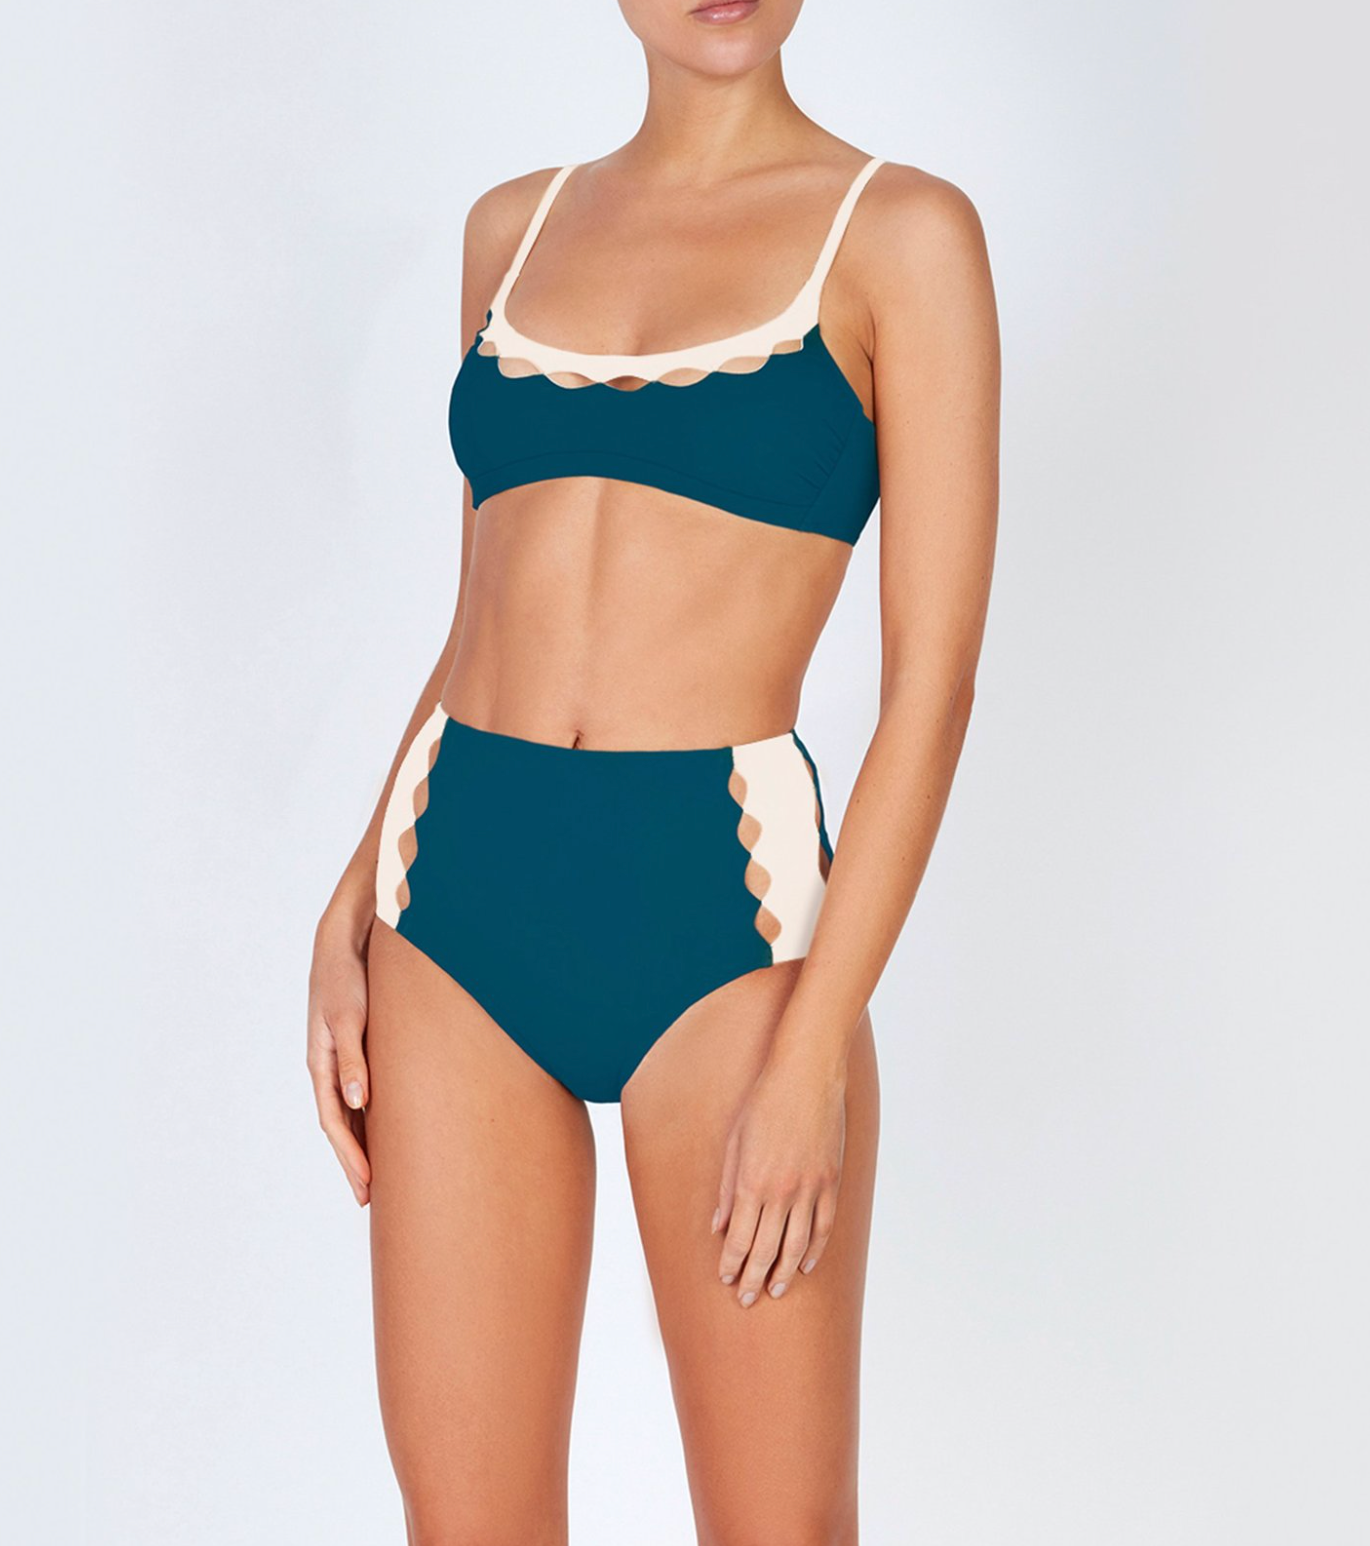 Evarae High Waist Bikini in Cream and Teal Blue